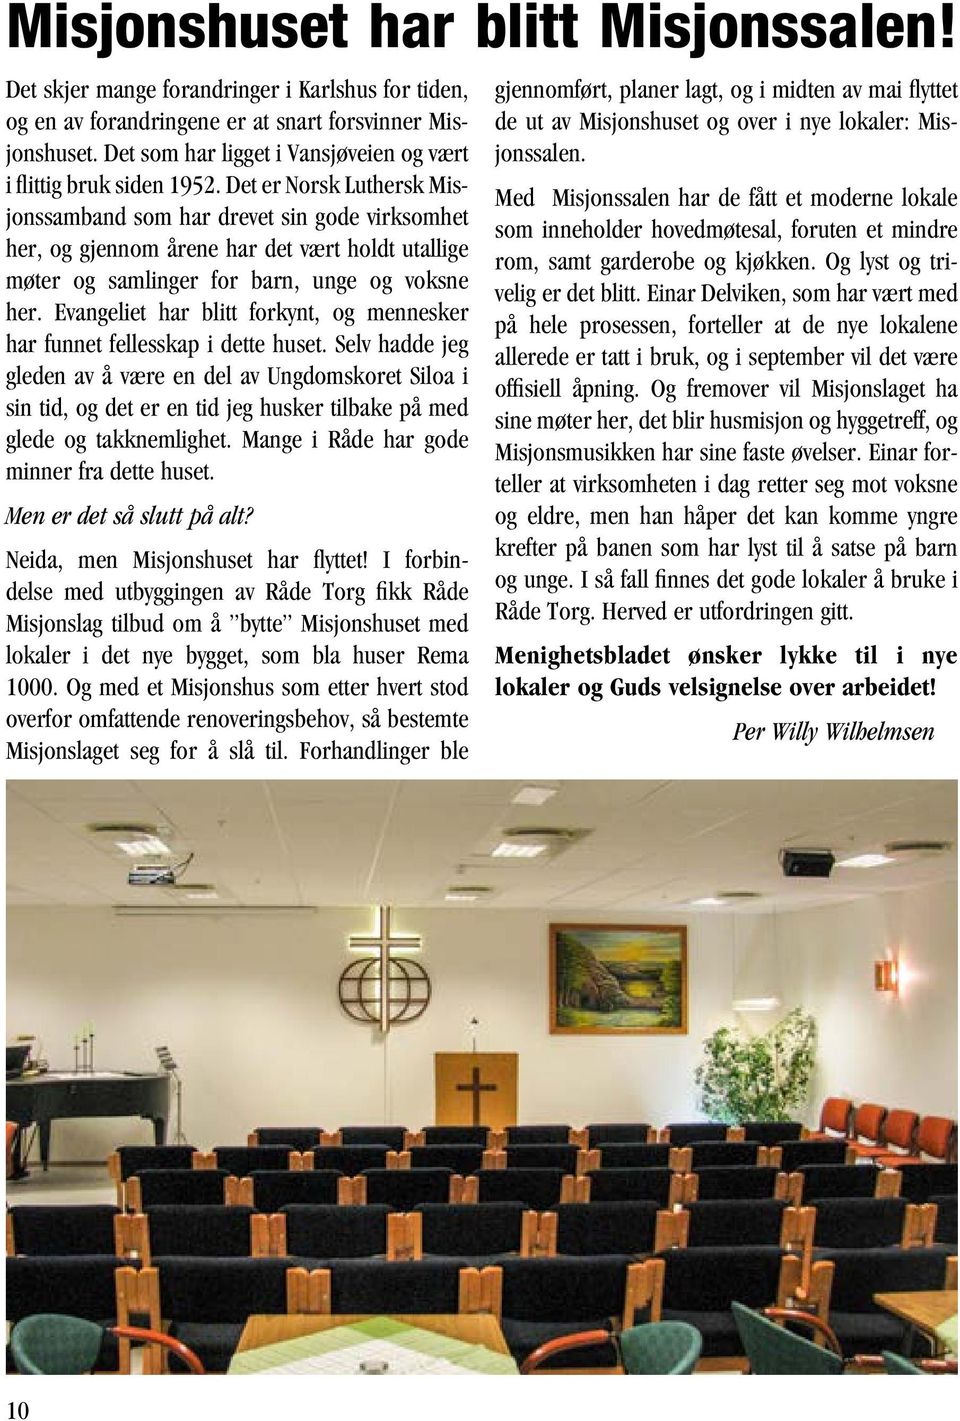 Det er Norsk Luthersk Misjonssamband som har drevet sin gode virksomhet her, og gjennom årene har det vært holdt utallige møter og samlinger for barn, unge og voksne her.